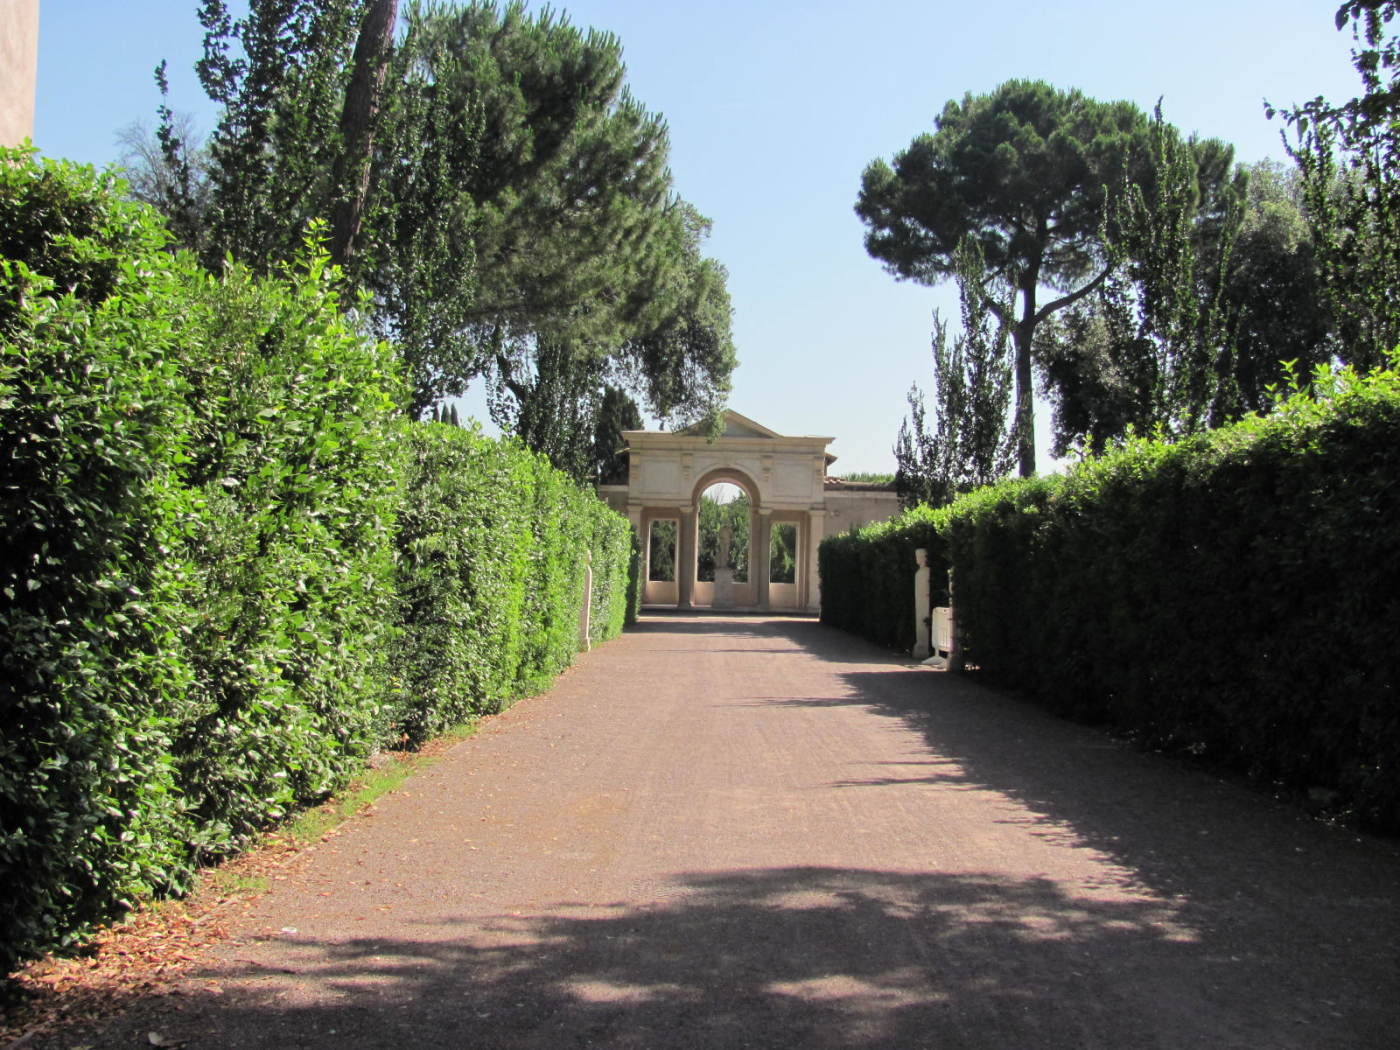 Villa Medici in Roma